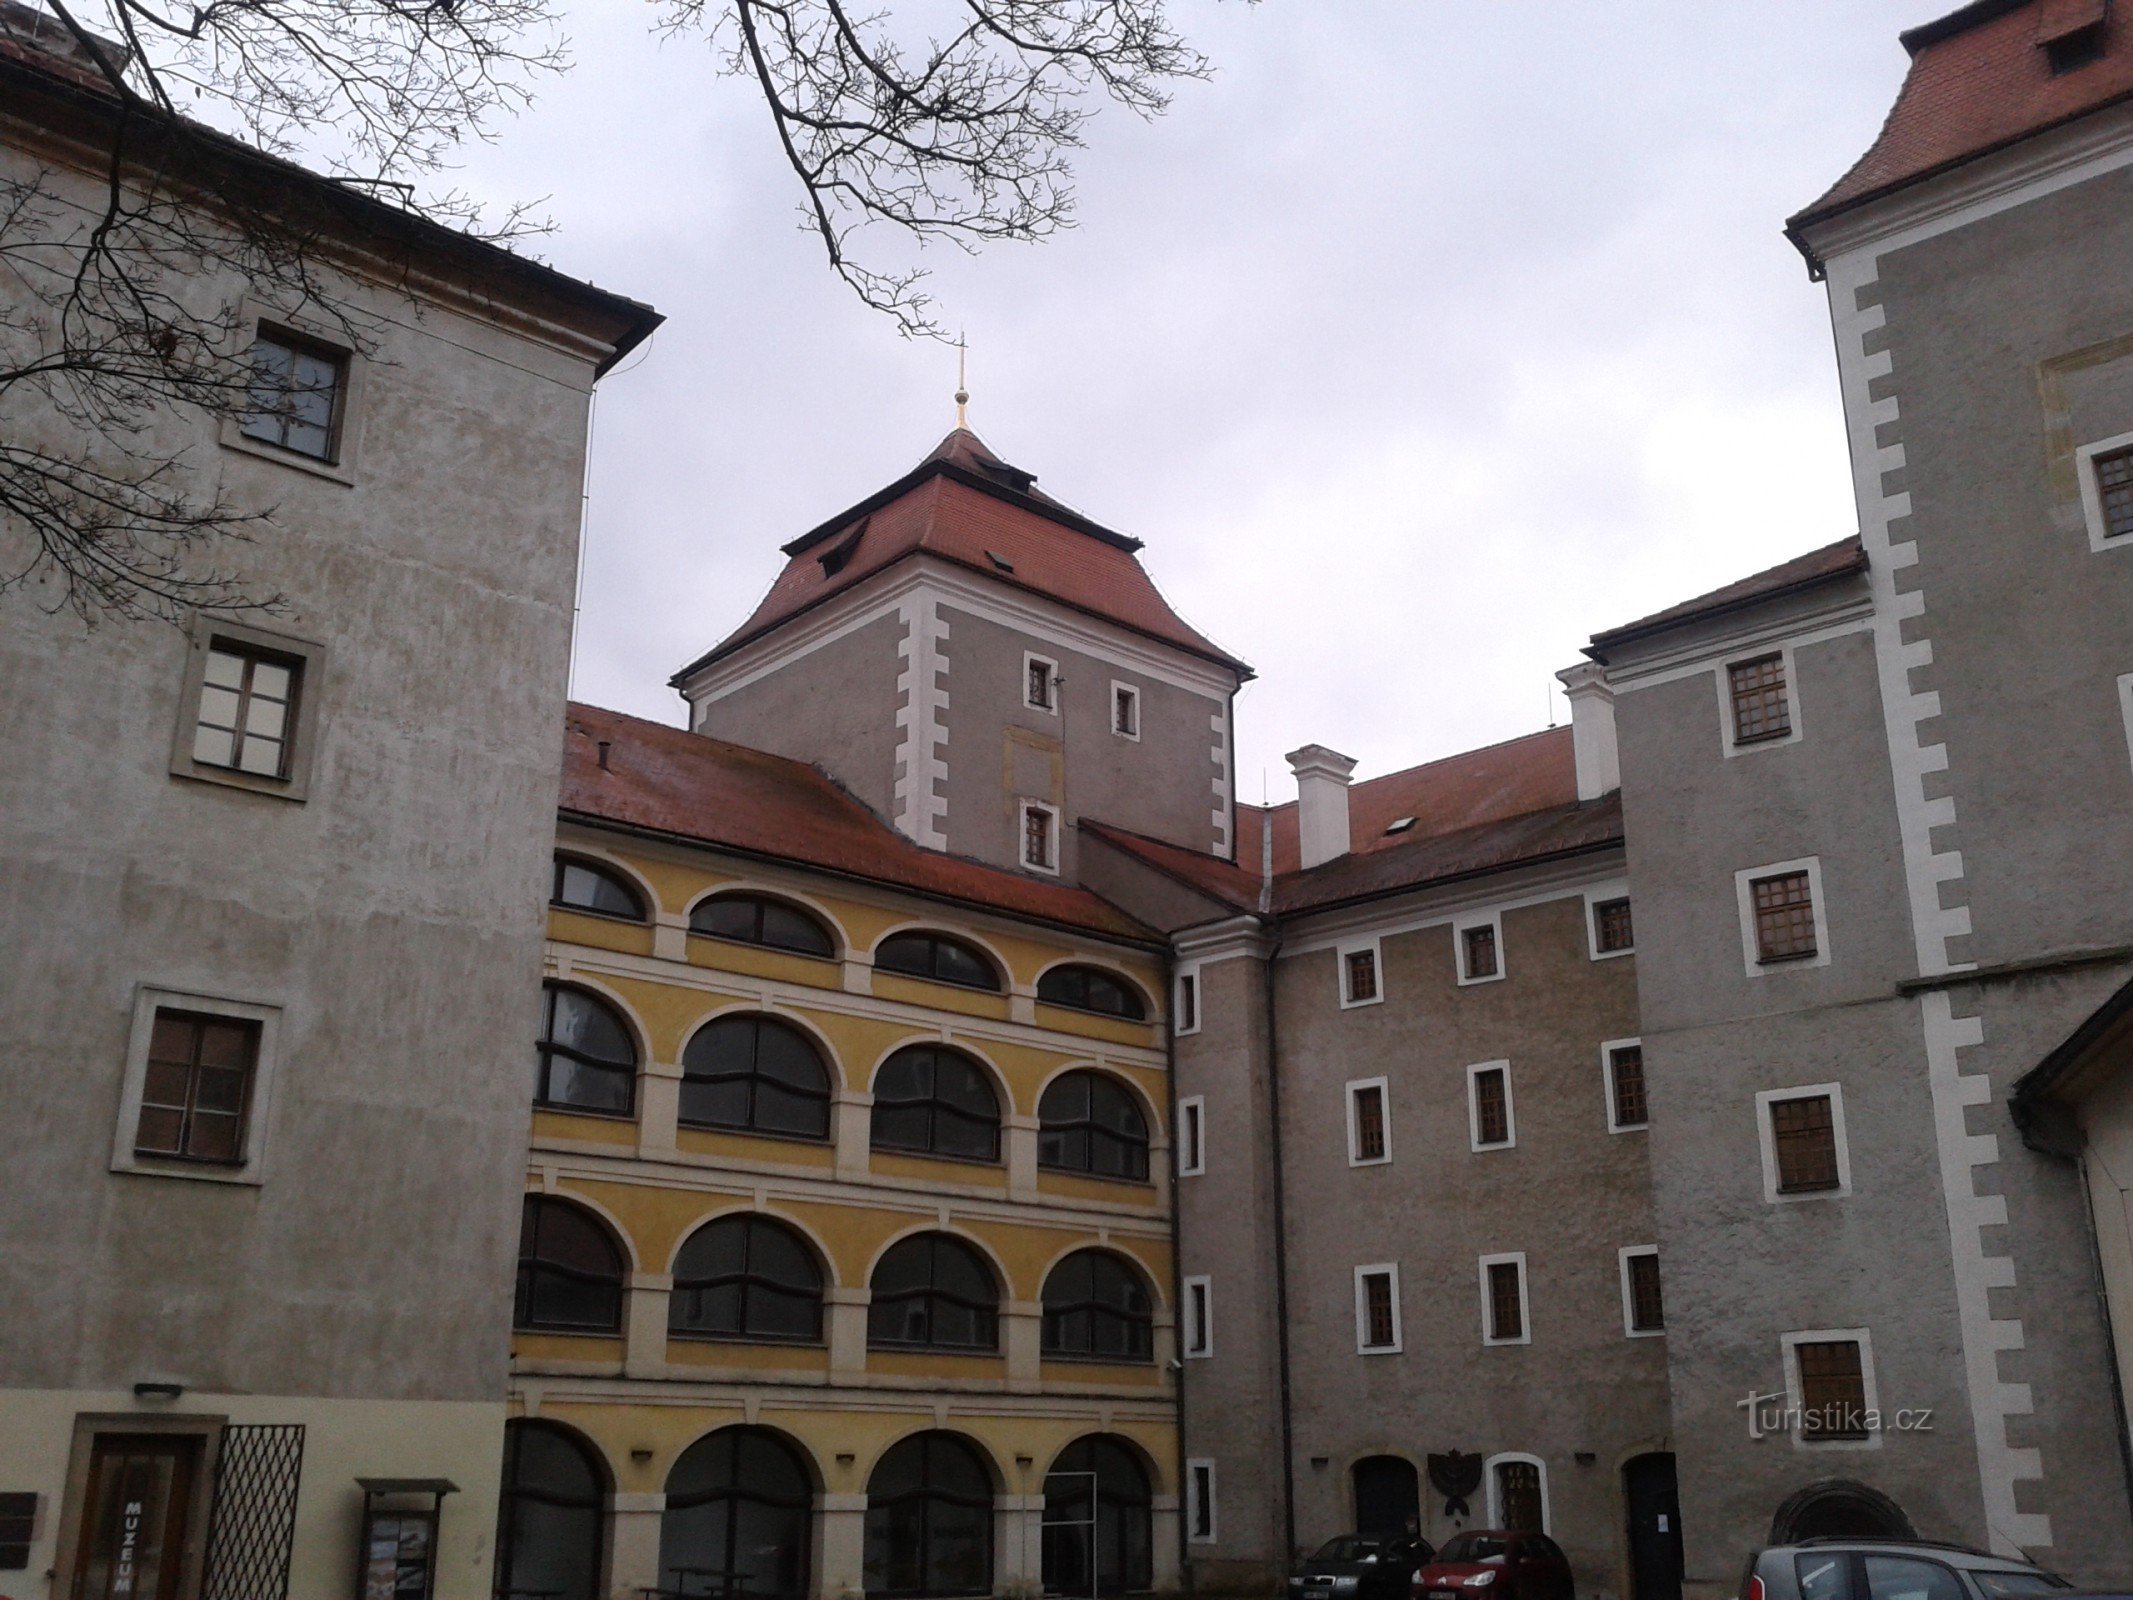 Mladá Boleslavs slott